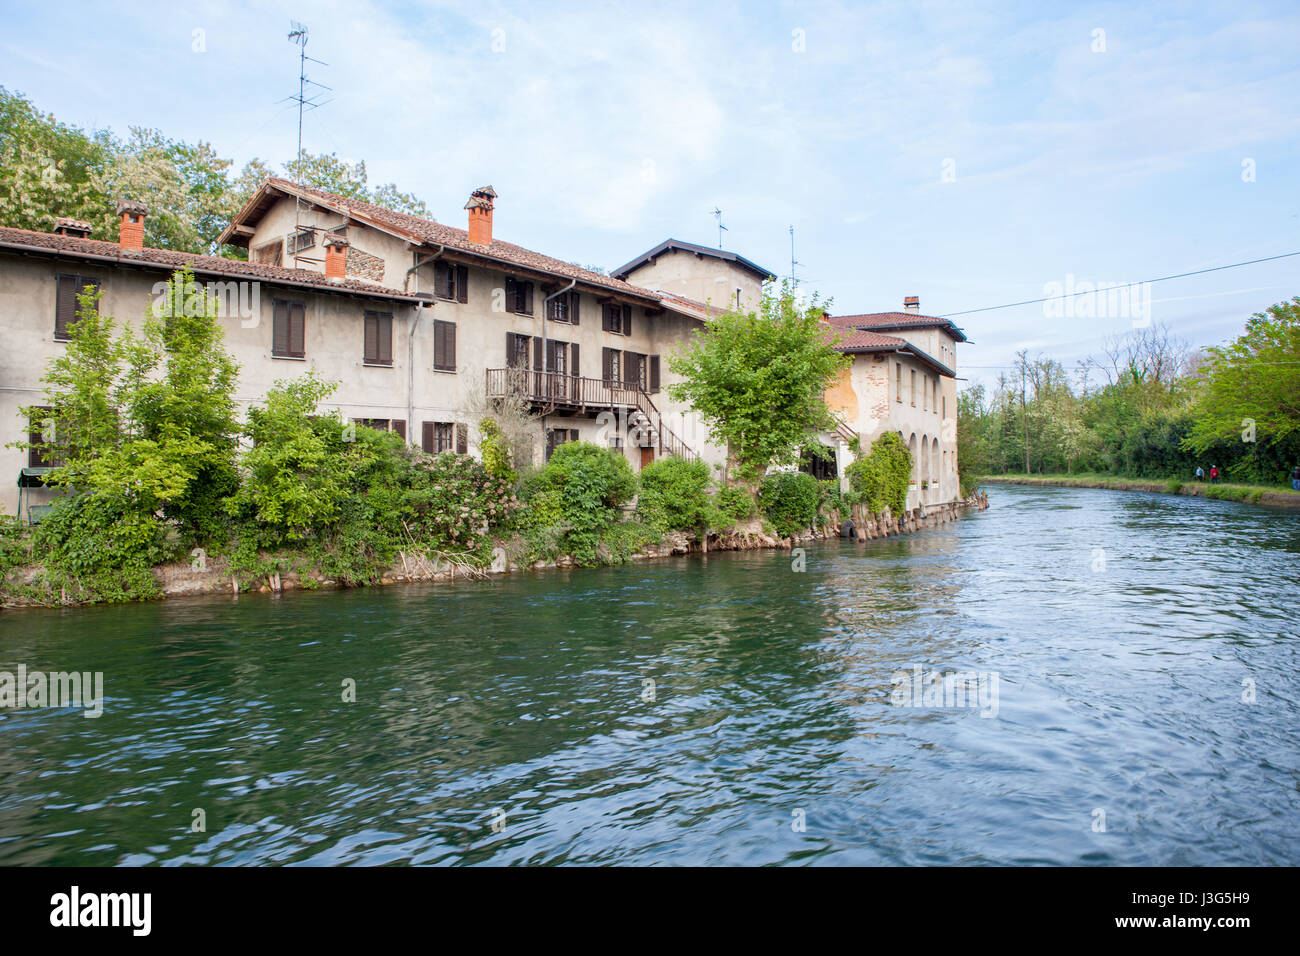 Vieilles maisons sur la rivière Naviglio Grande, un peu de distance à partir de Milan. Castelletto di Cuggiono, Italie Banque D'Images